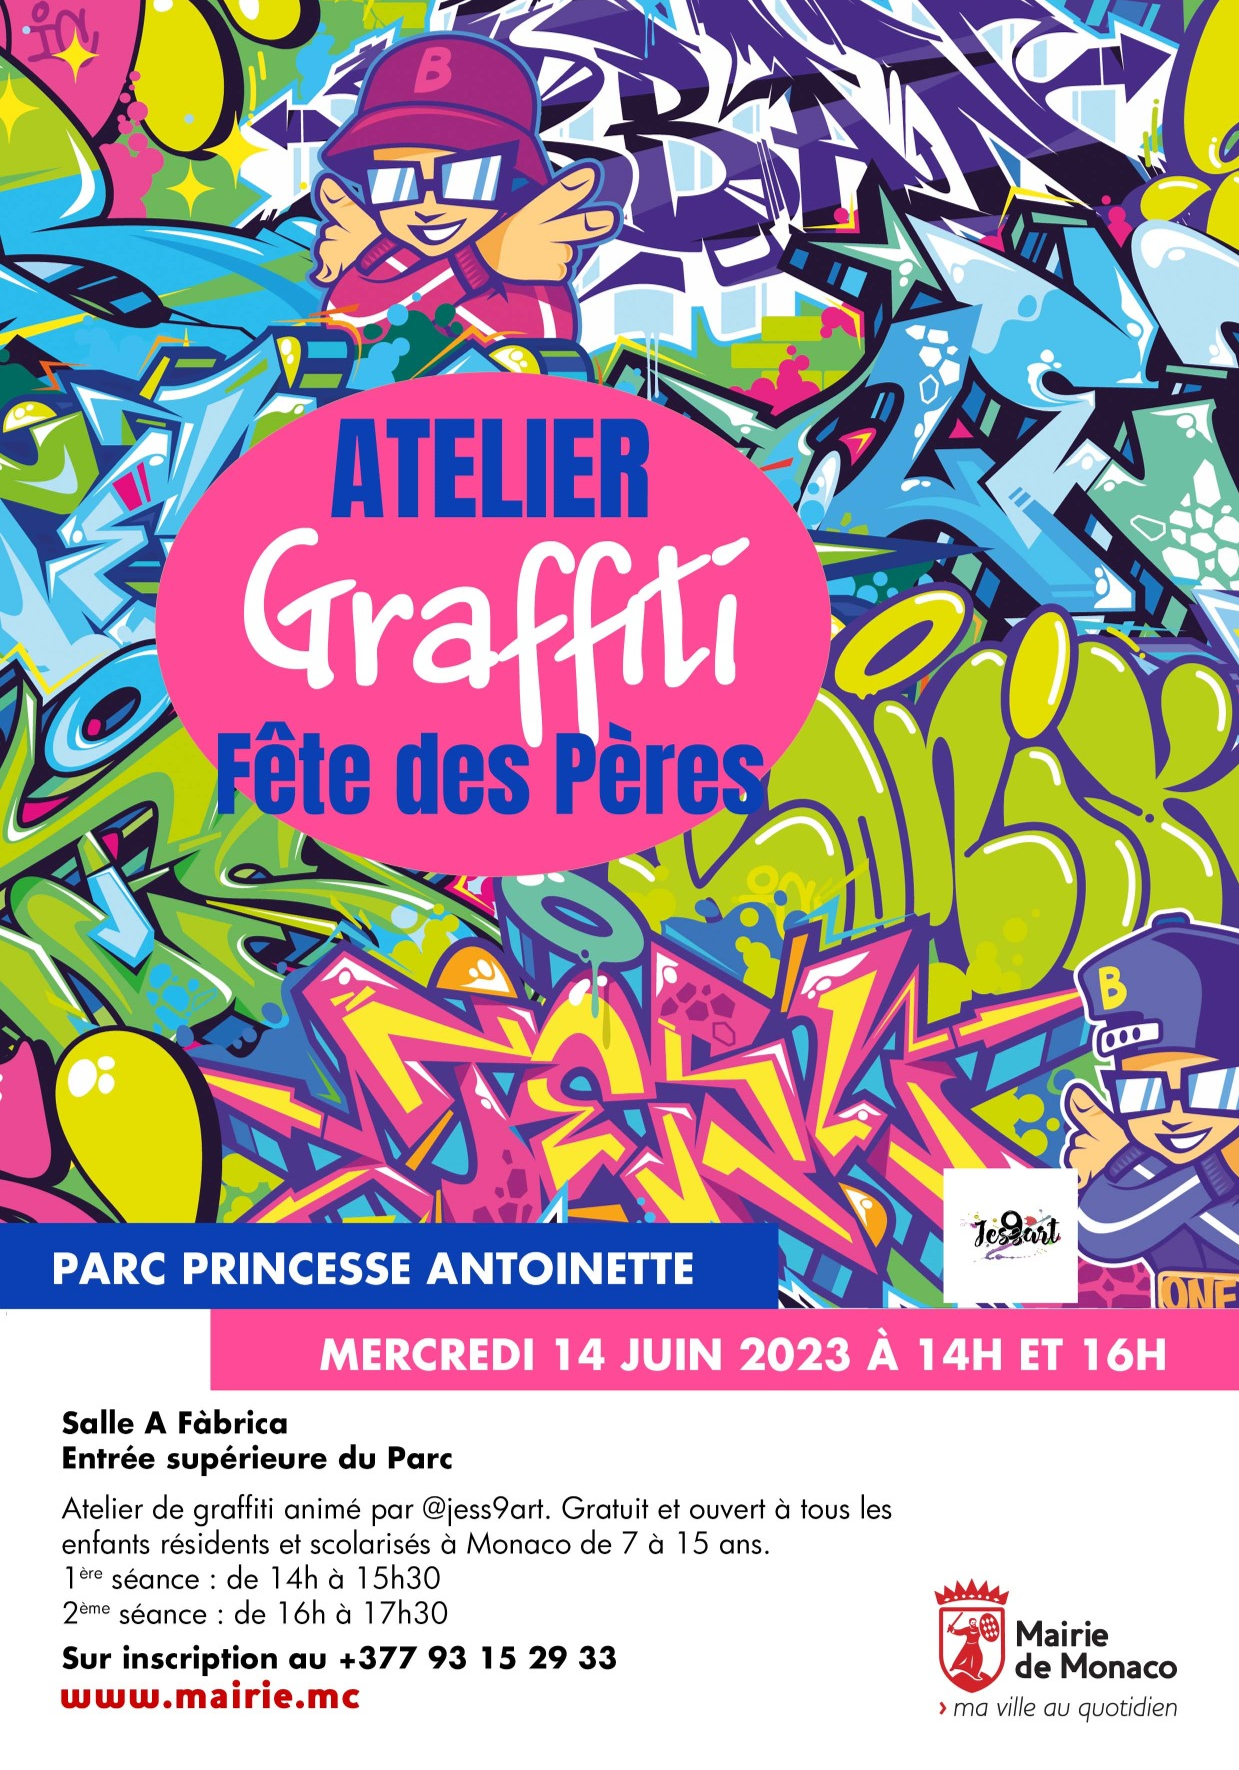 Affiche de l'événement Atelier Graffiti